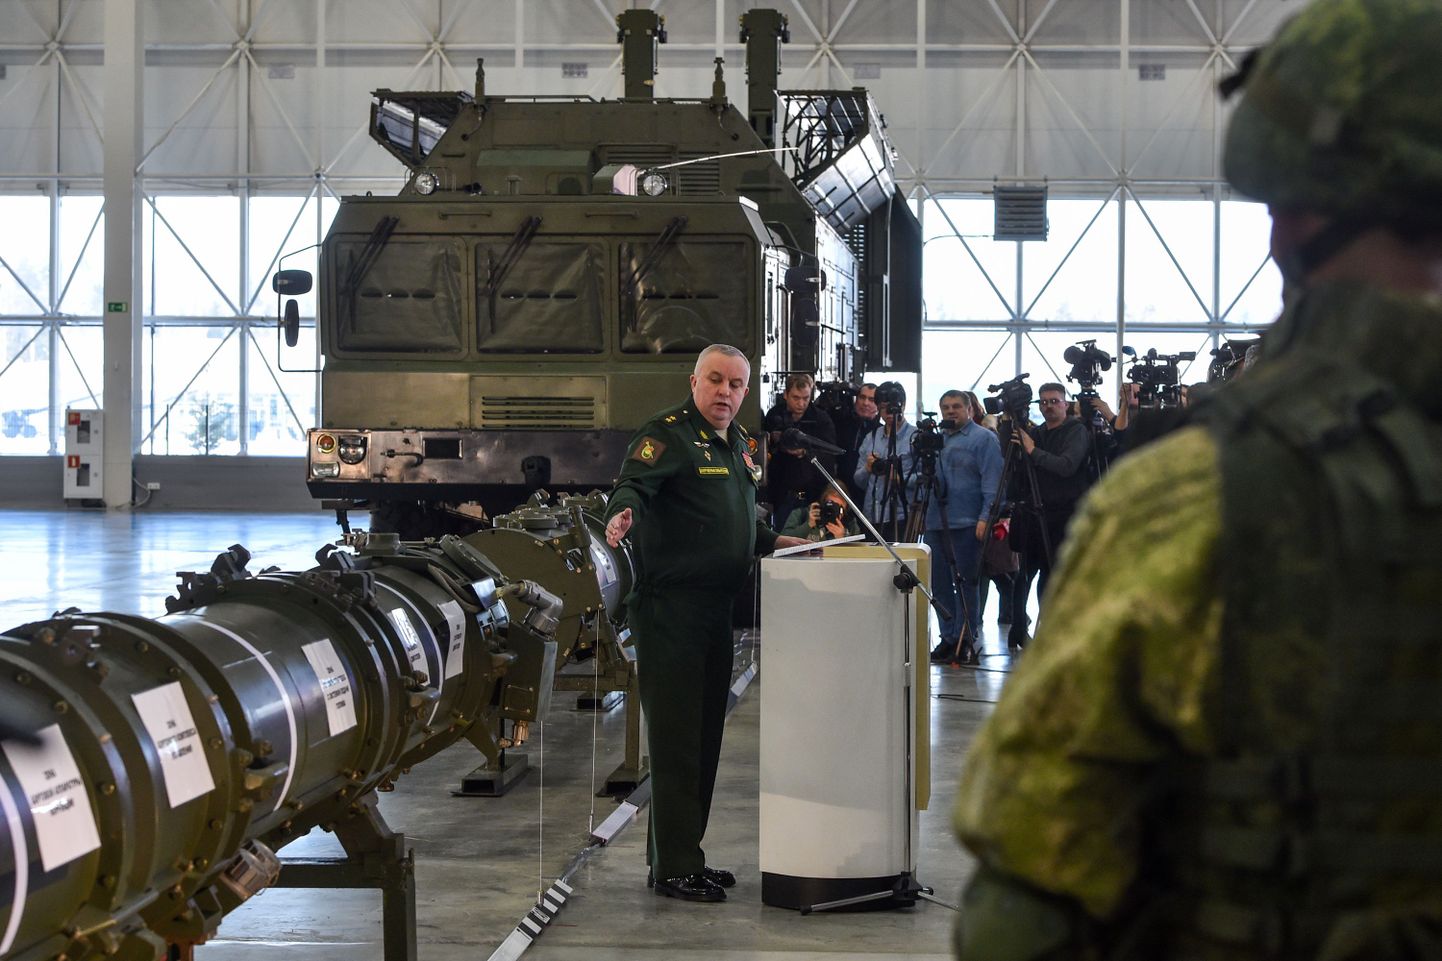 Venemaal tutvustati eile avalikkusele raketisüsteemi 9M729, mis Ameerika Ühendriikide ja NATO sõnul rikub Venemaa ning Ühendriikide vahel sõlmitud keskmaa tuumajõudude lepingut (INF).